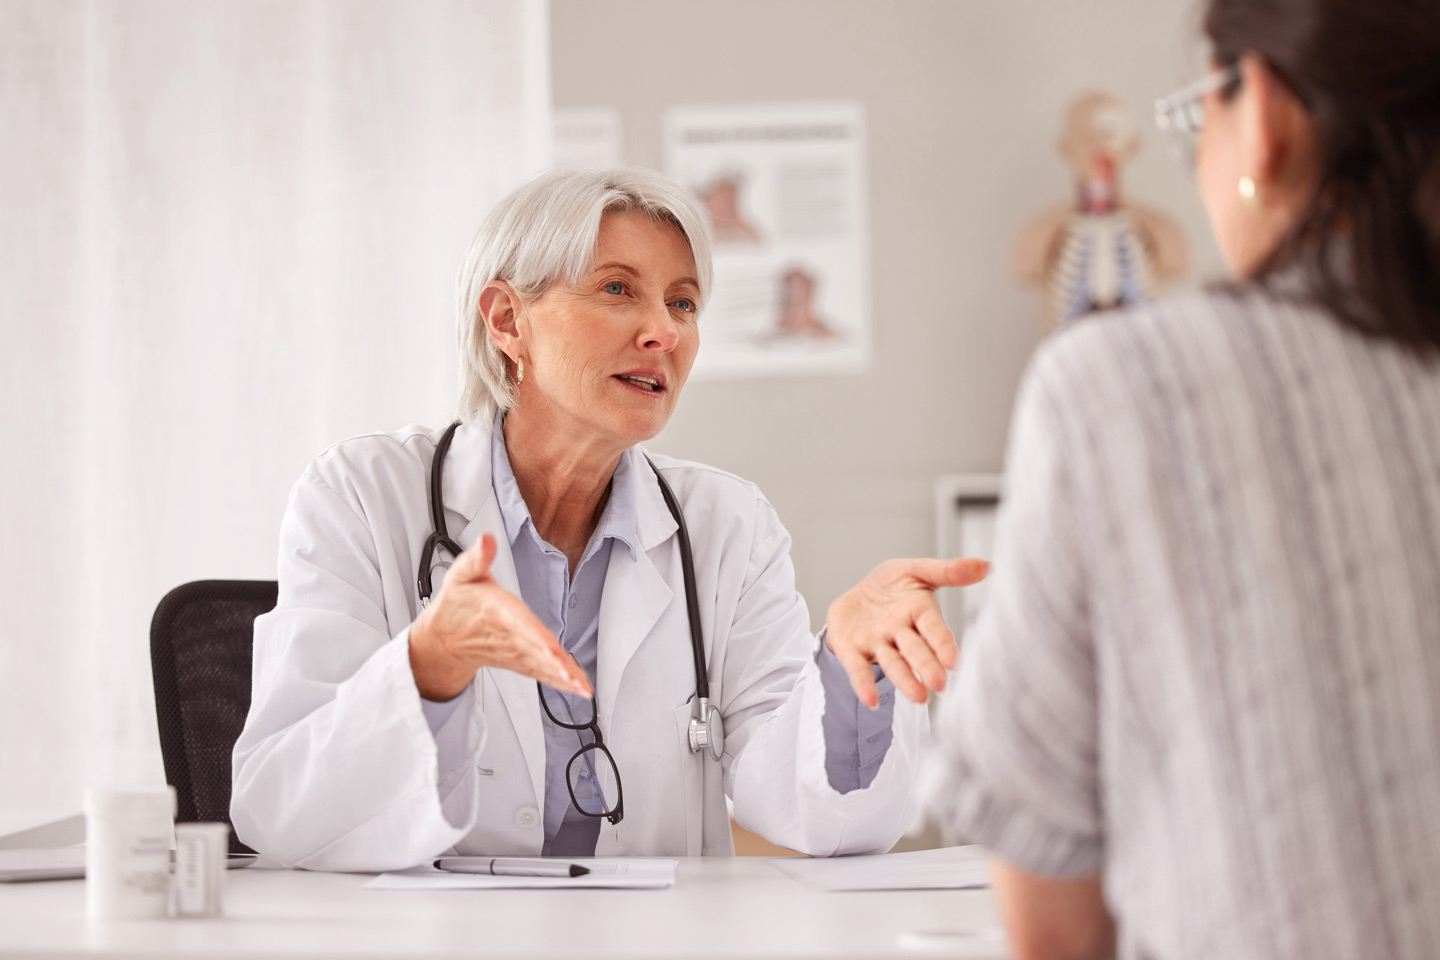 Foto: Eine Ärztin spricht mit einer Patientin. Beide sitzen sich an einem Schreibtisch gegenüber.